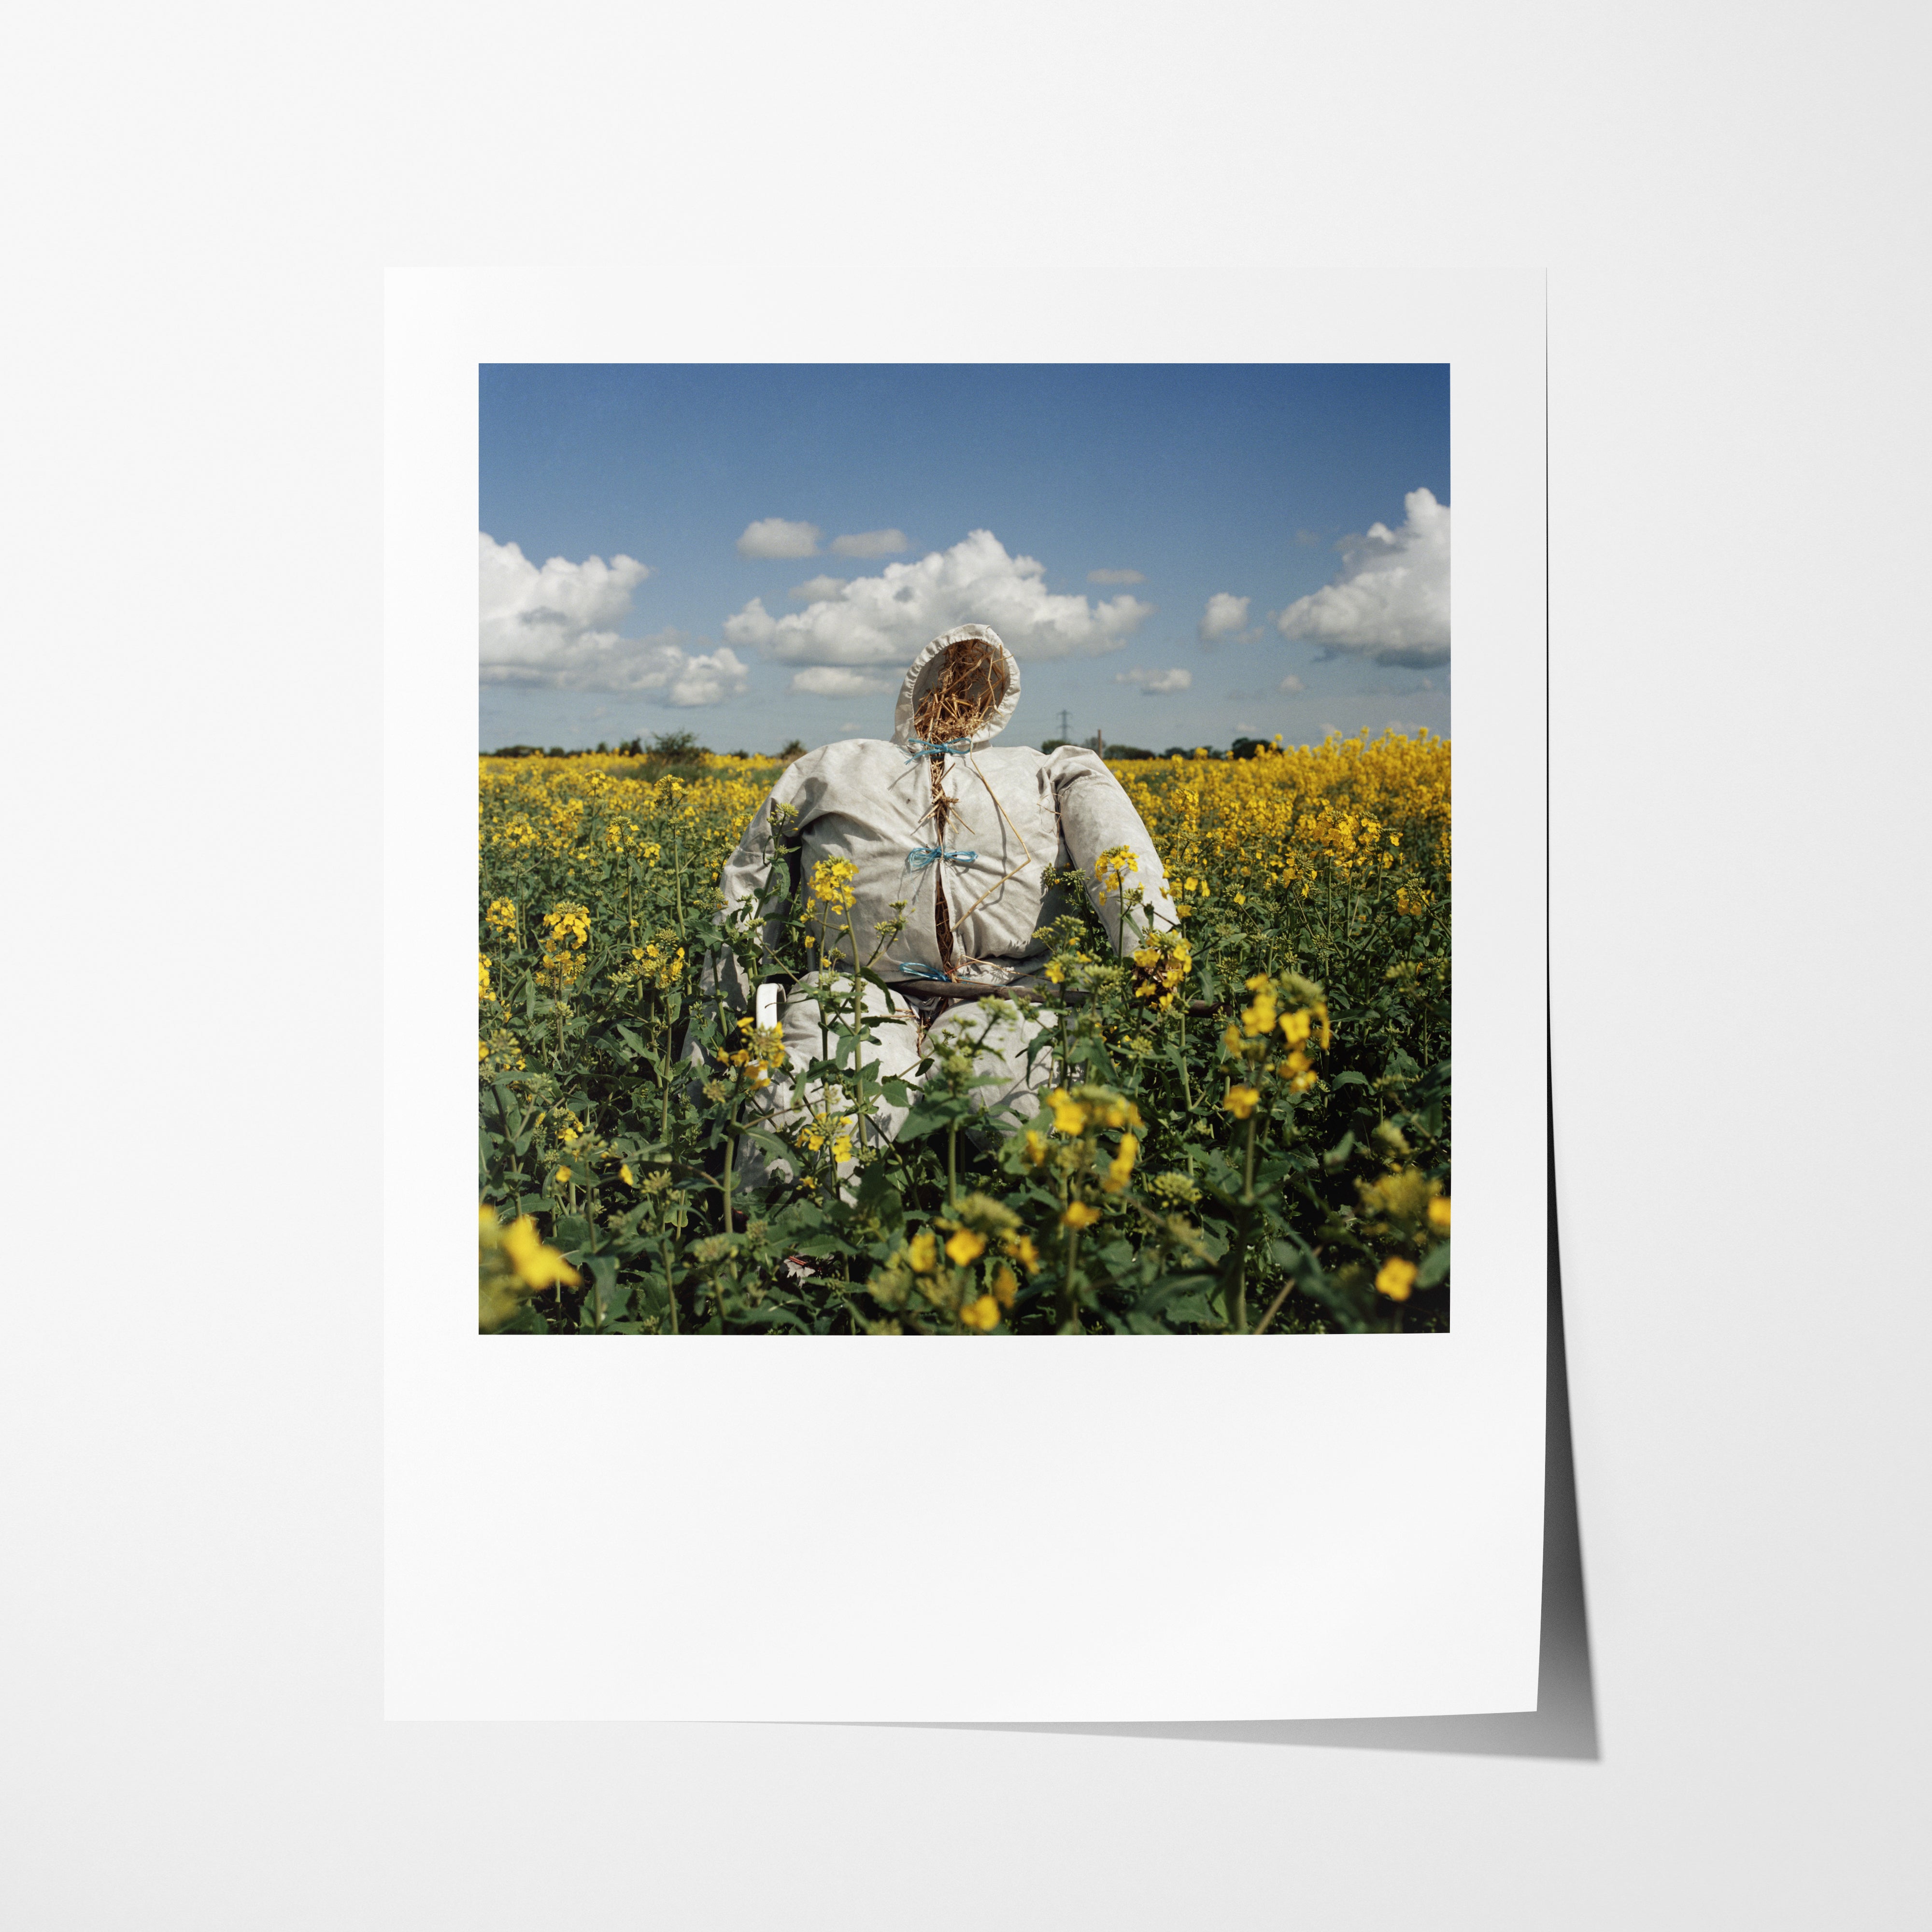 Scarecrow 27 - 16x20" Pigment Print